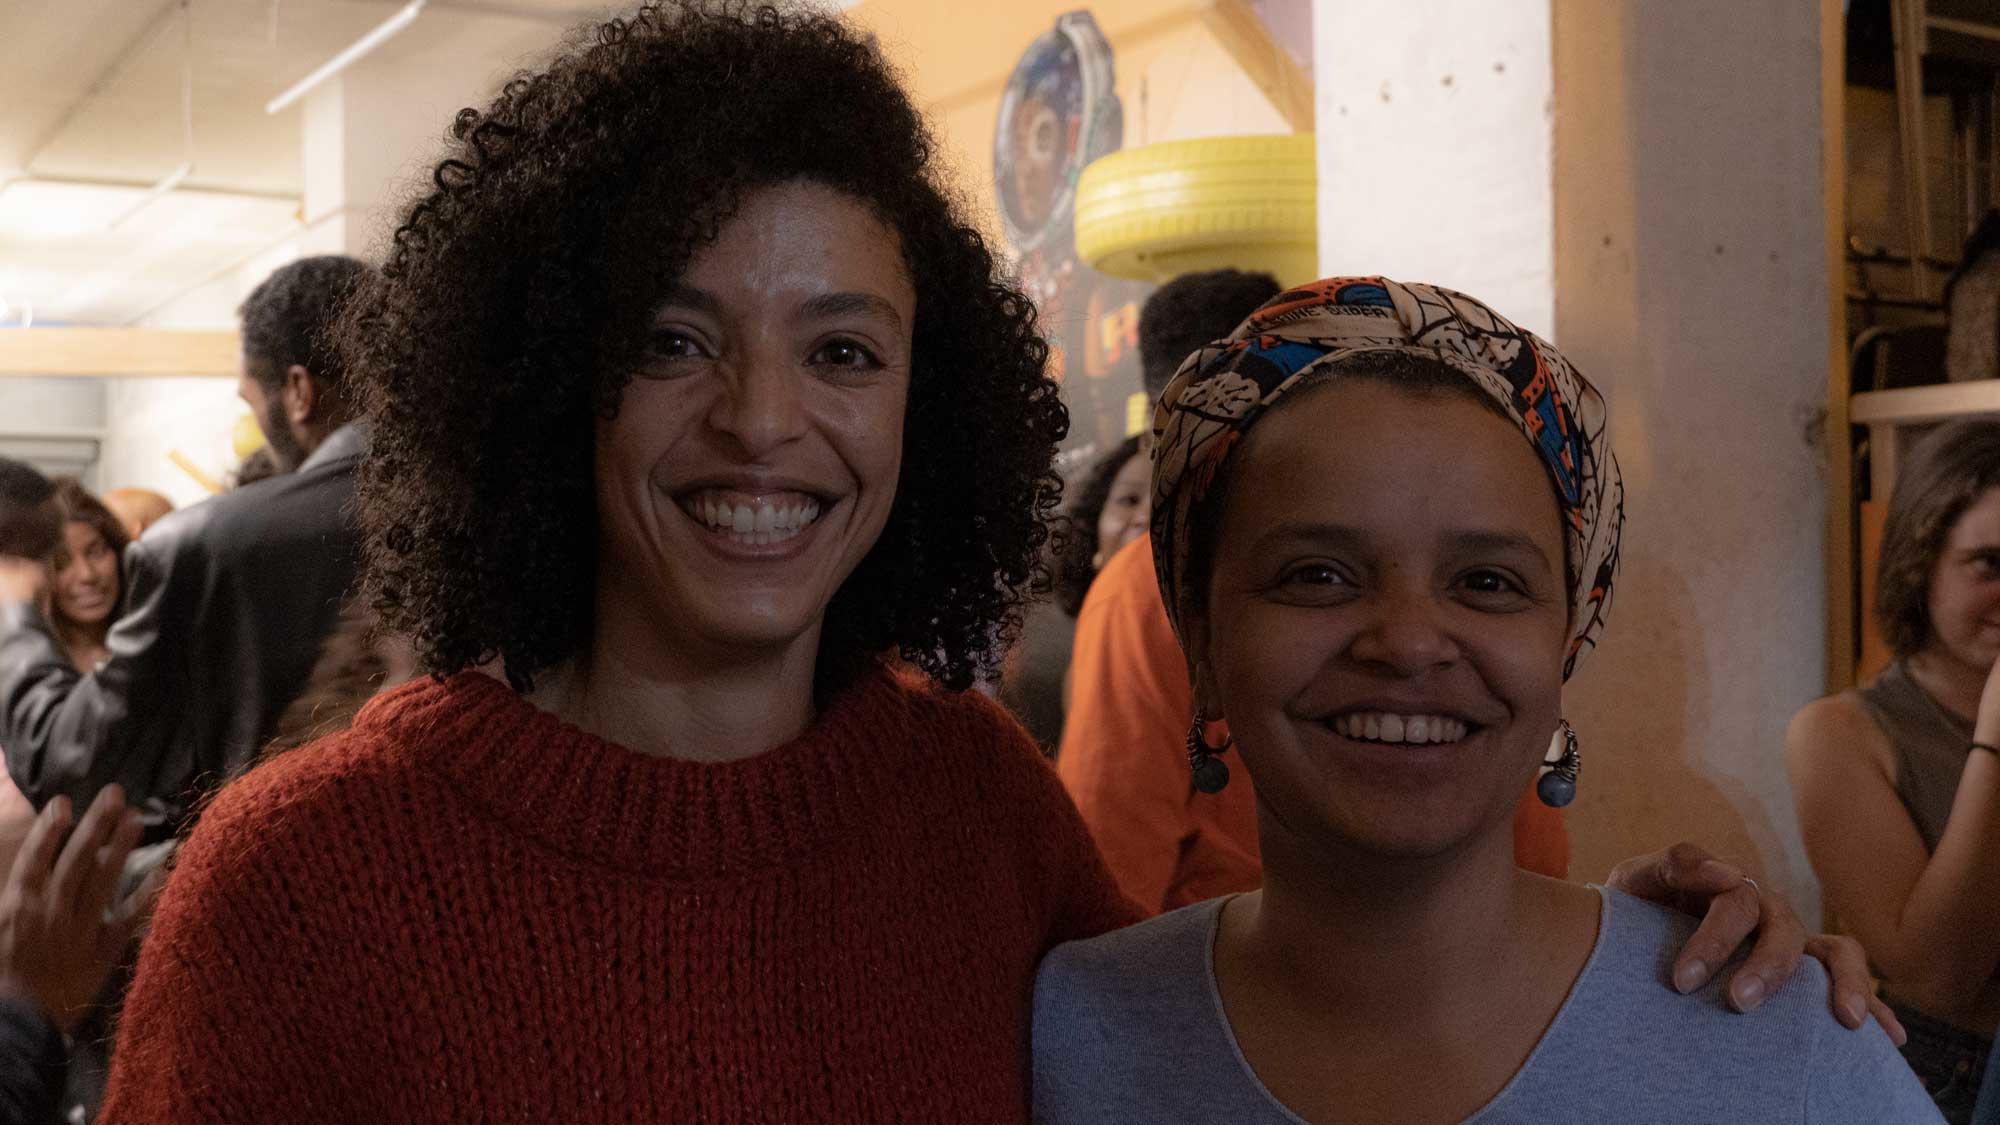 Bruna Pereira y Yanelys Núñez celebraron con alegría y muchas expectativas la apertura del Espacio Afro en Madrid